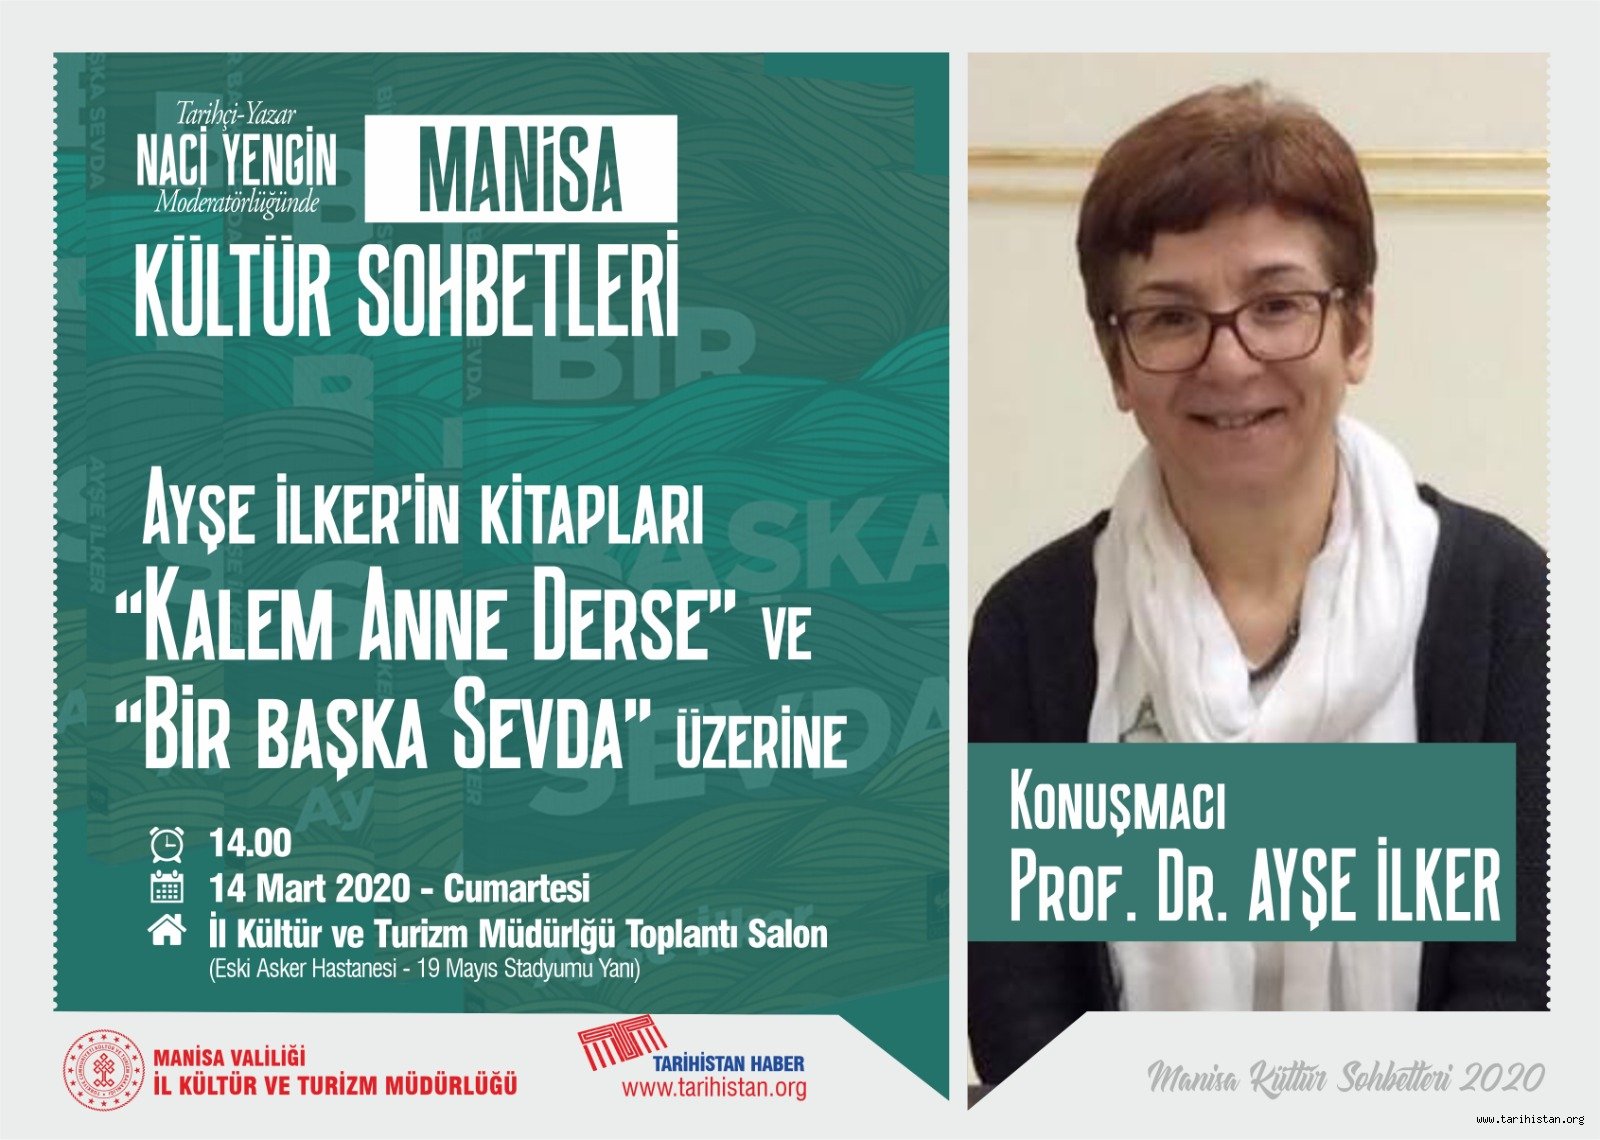 Manisa Kültür Sohbetleri'nde Prof. Dr. Ayşe İlker Konuşacak